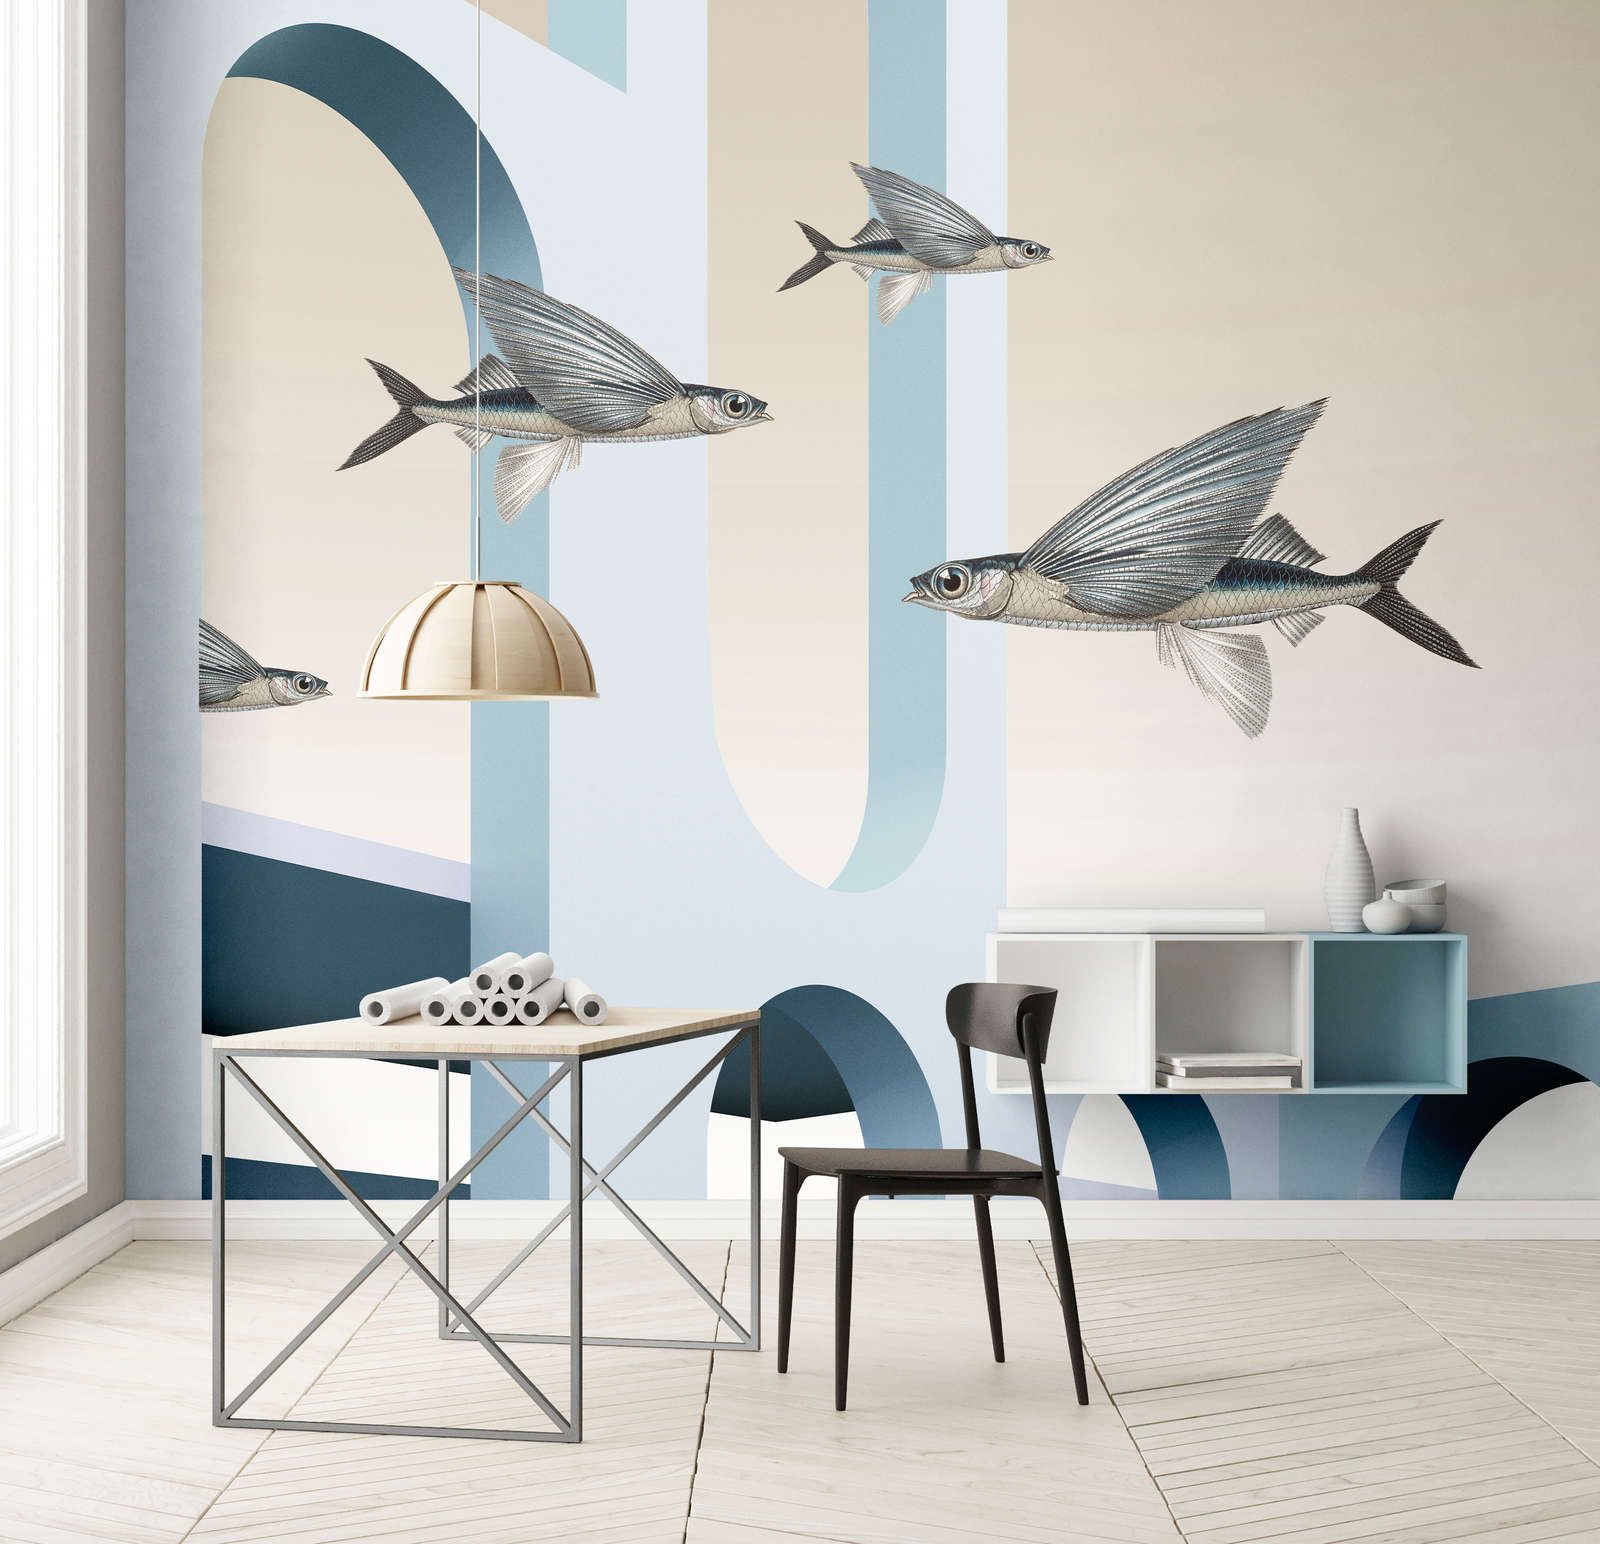             styx - papier peint en papier panoramique avec architecture abstraite 3D et poissons volants - intissé légèrement structuré
        